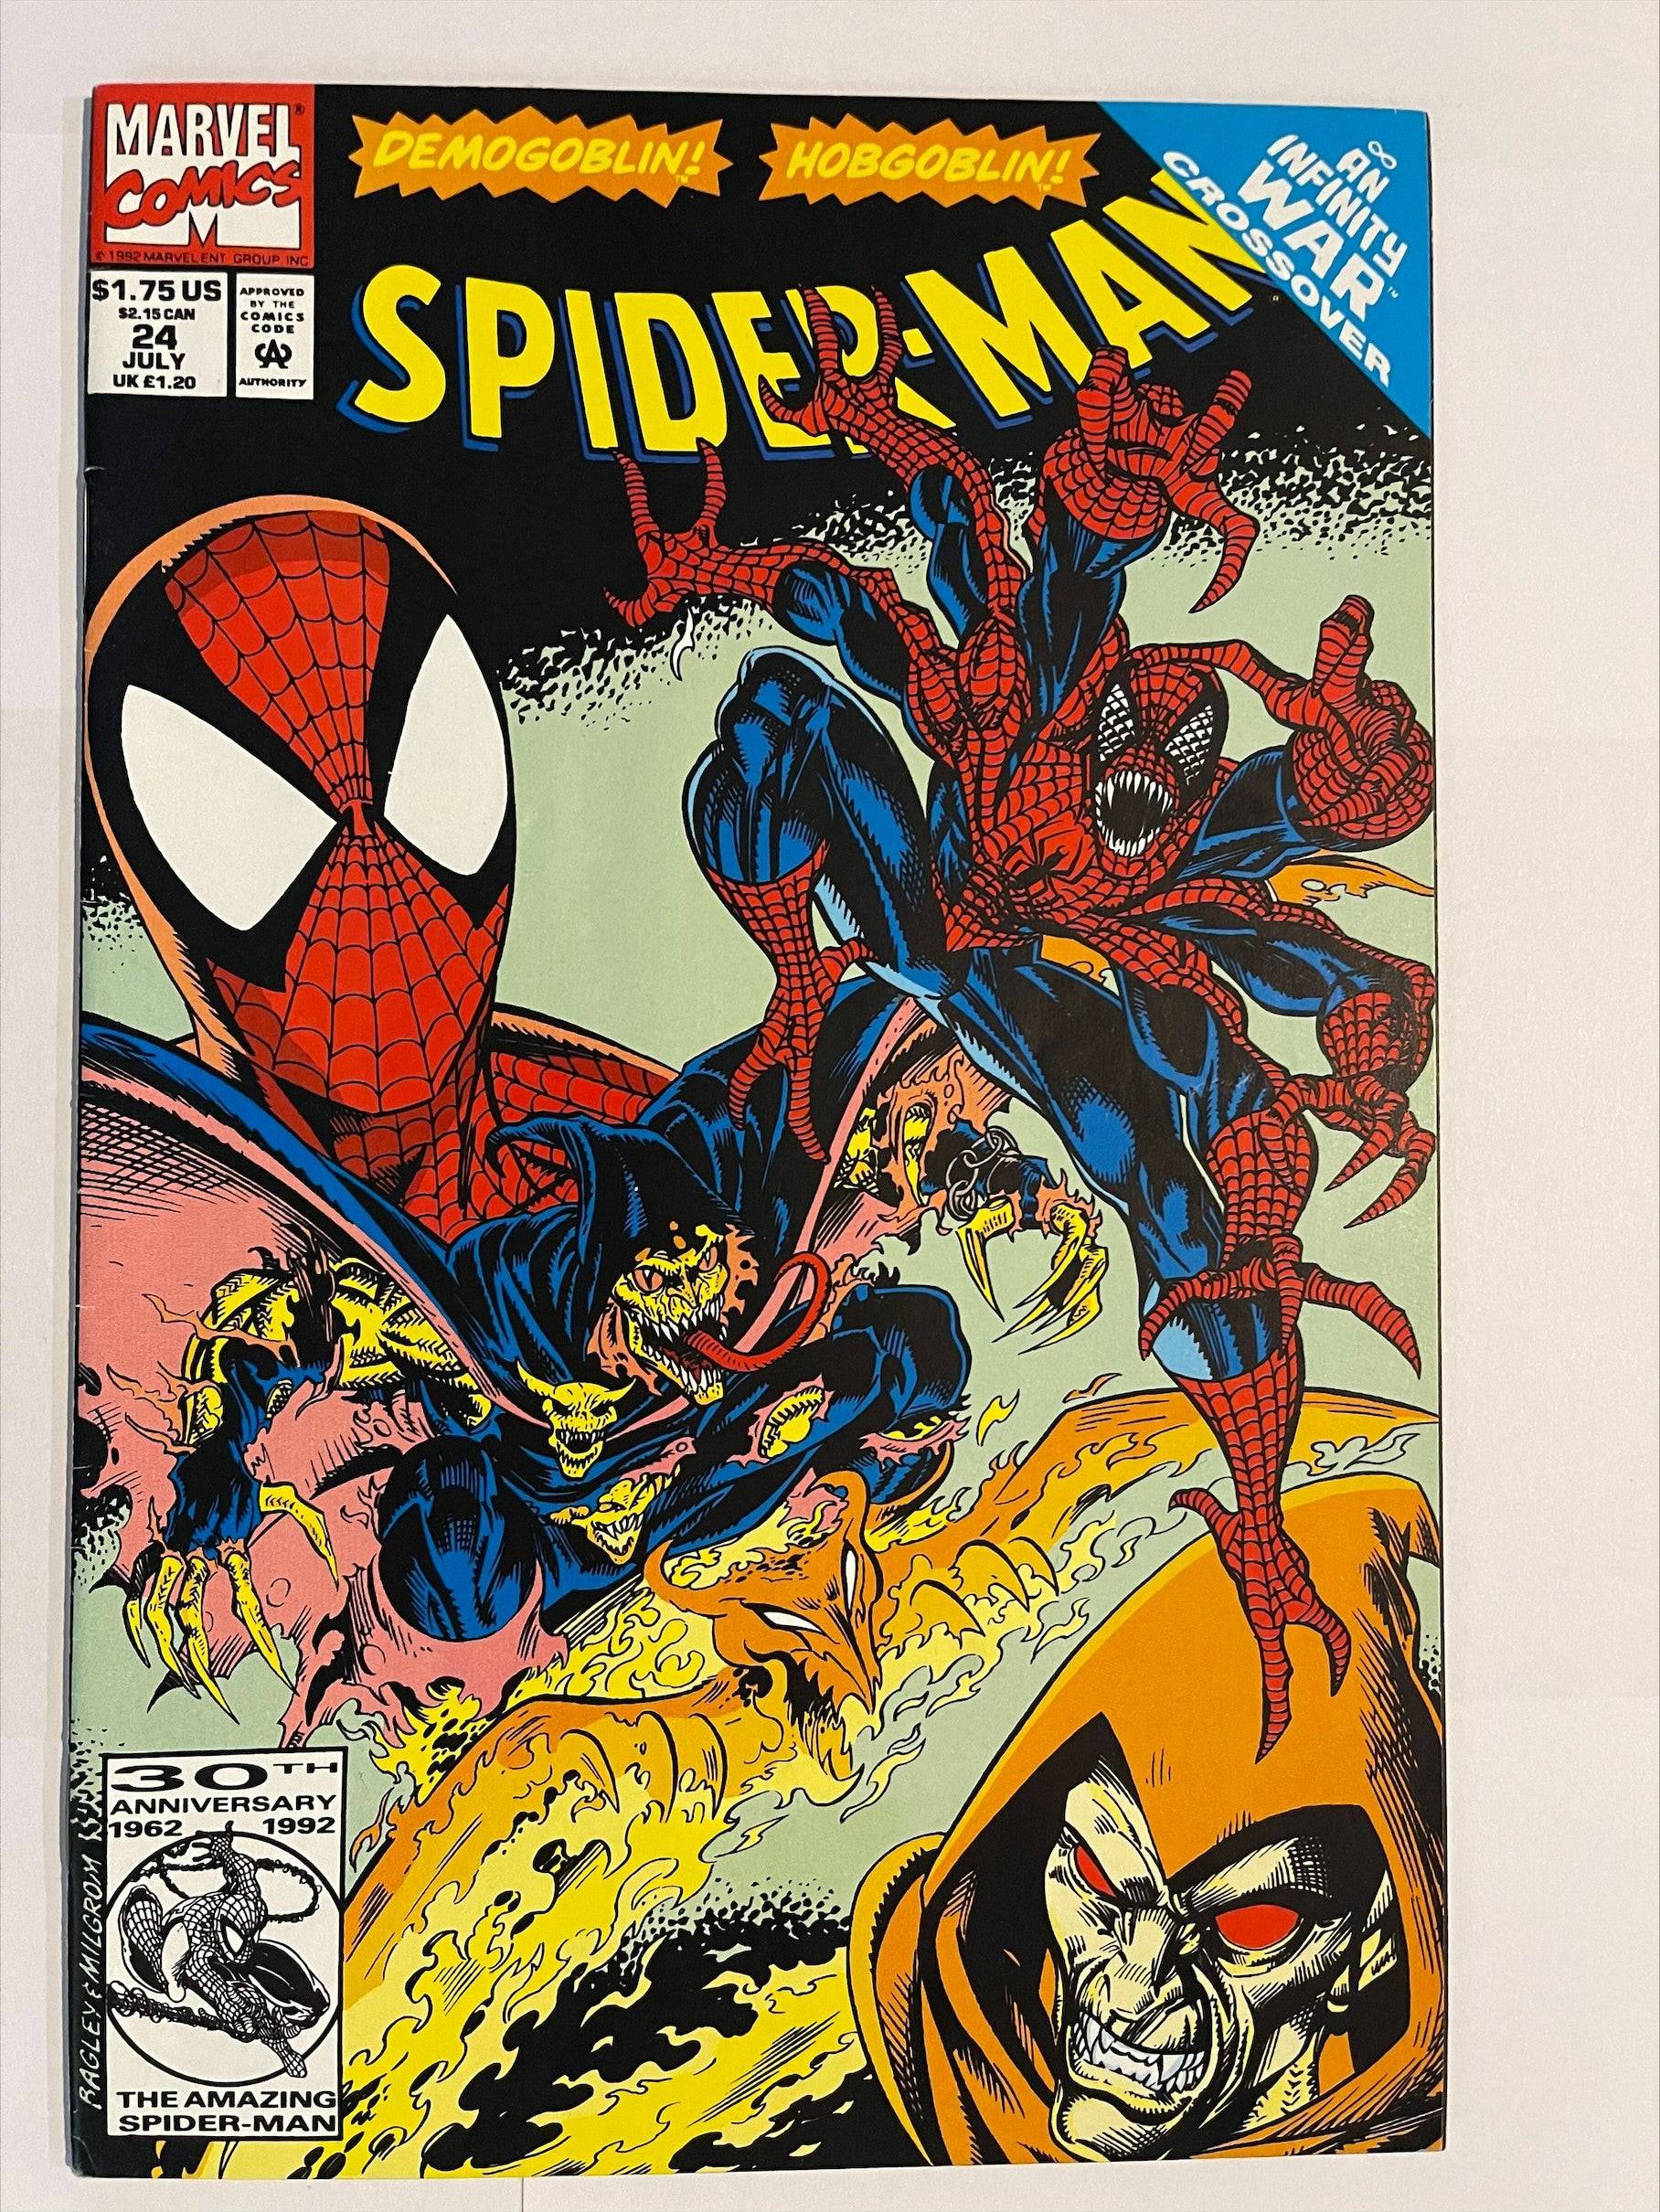 Spider-Man #24 Infinity War Crossover F-VF Marvel Comics Demogoblin Hobogoblin. King Gaming